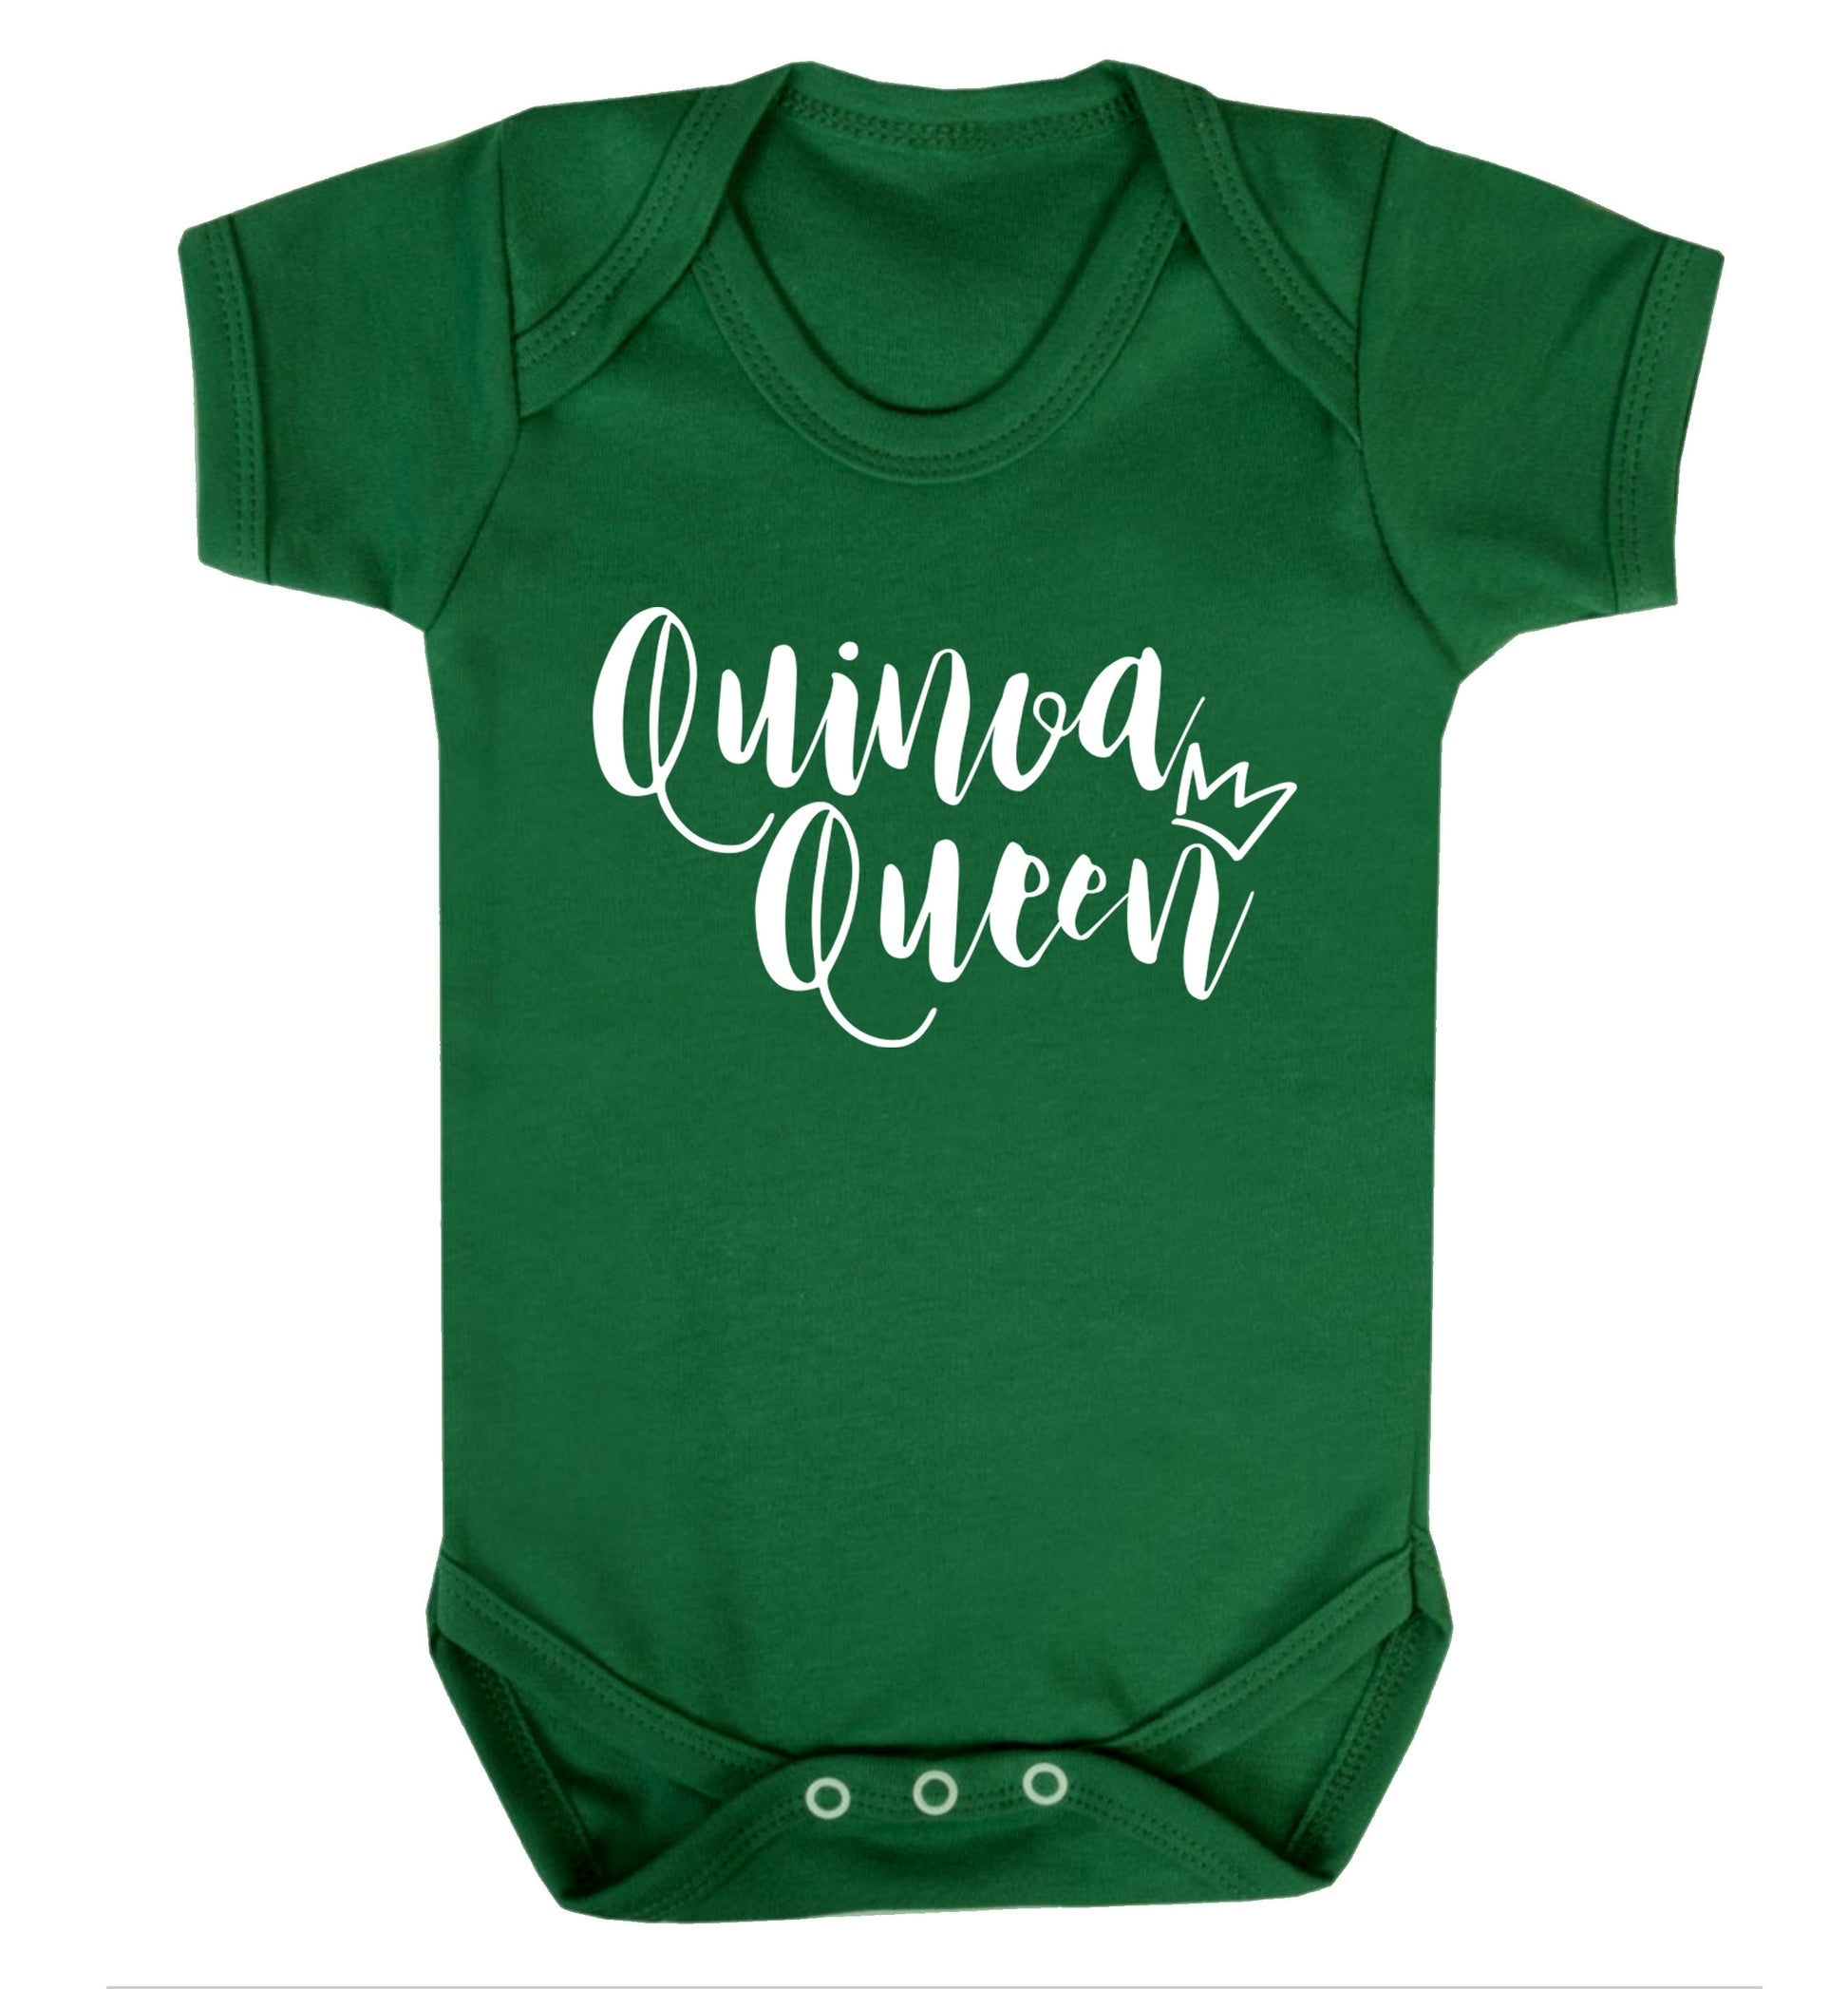 Quinoa Queen Baby Vest green 18-24 months